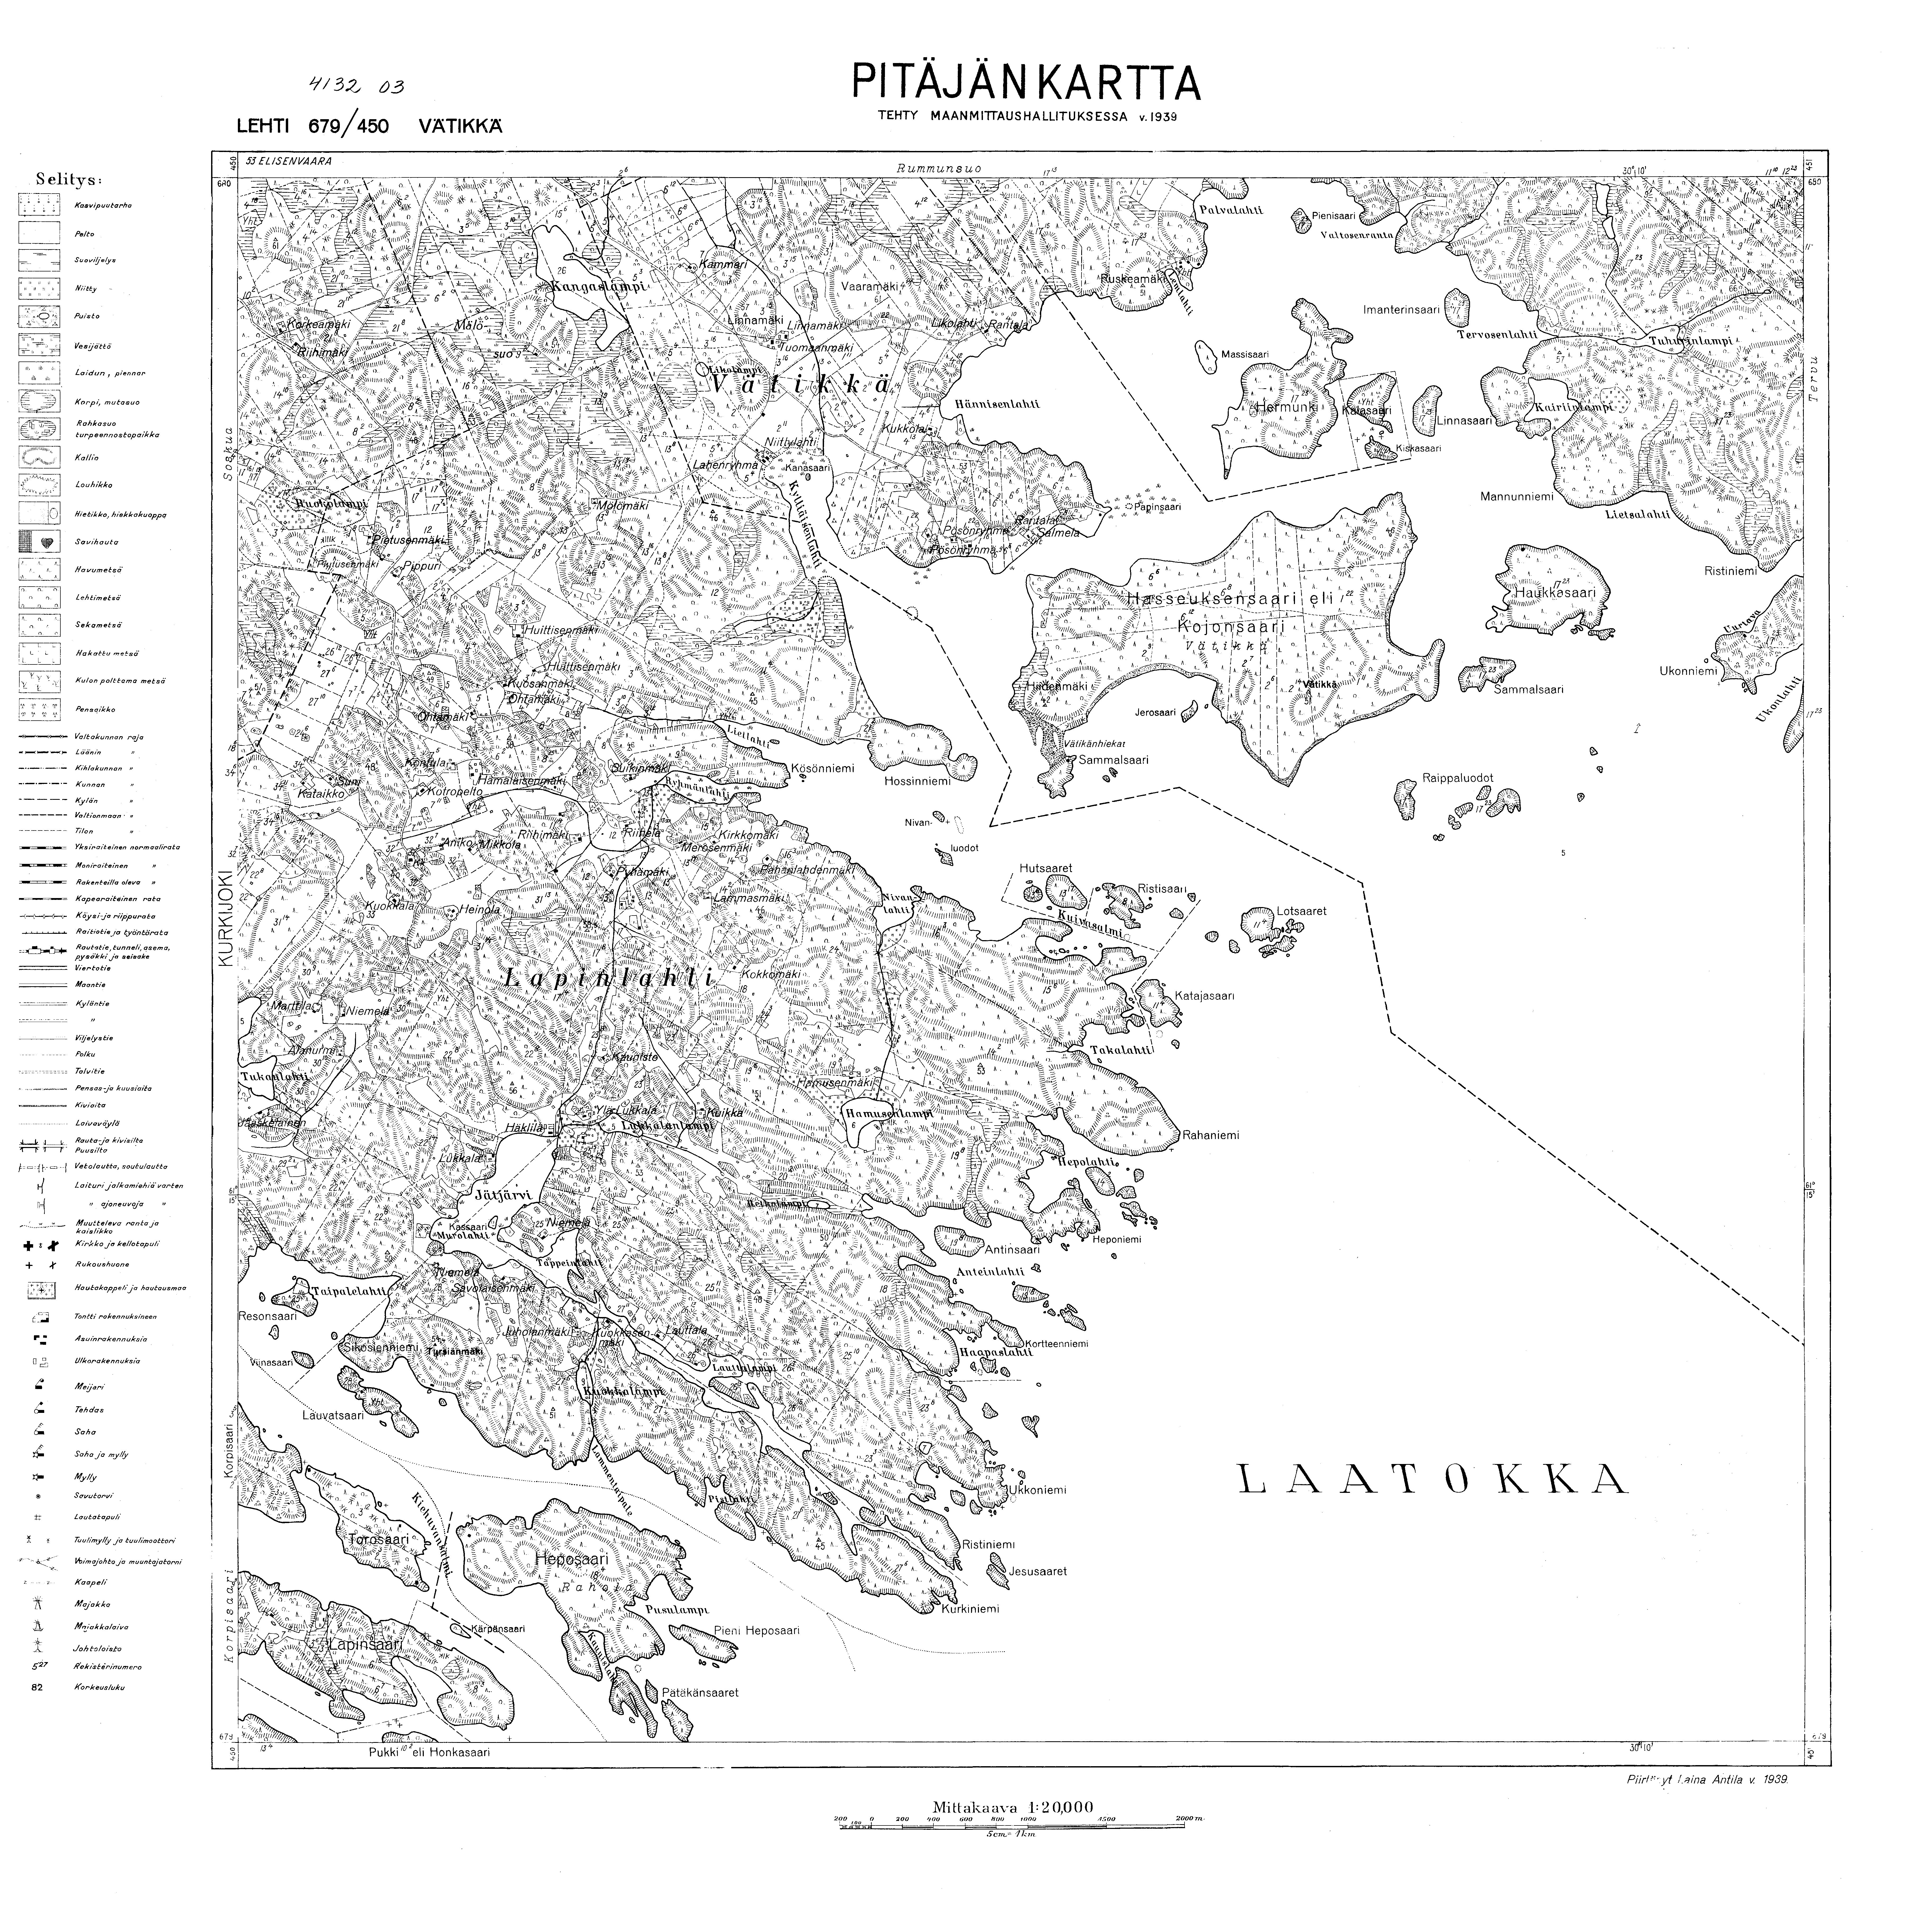 Vätikkä (Vjatikkja. Vätikkä. Pitäjänkartta 413203. Parish map from 1939